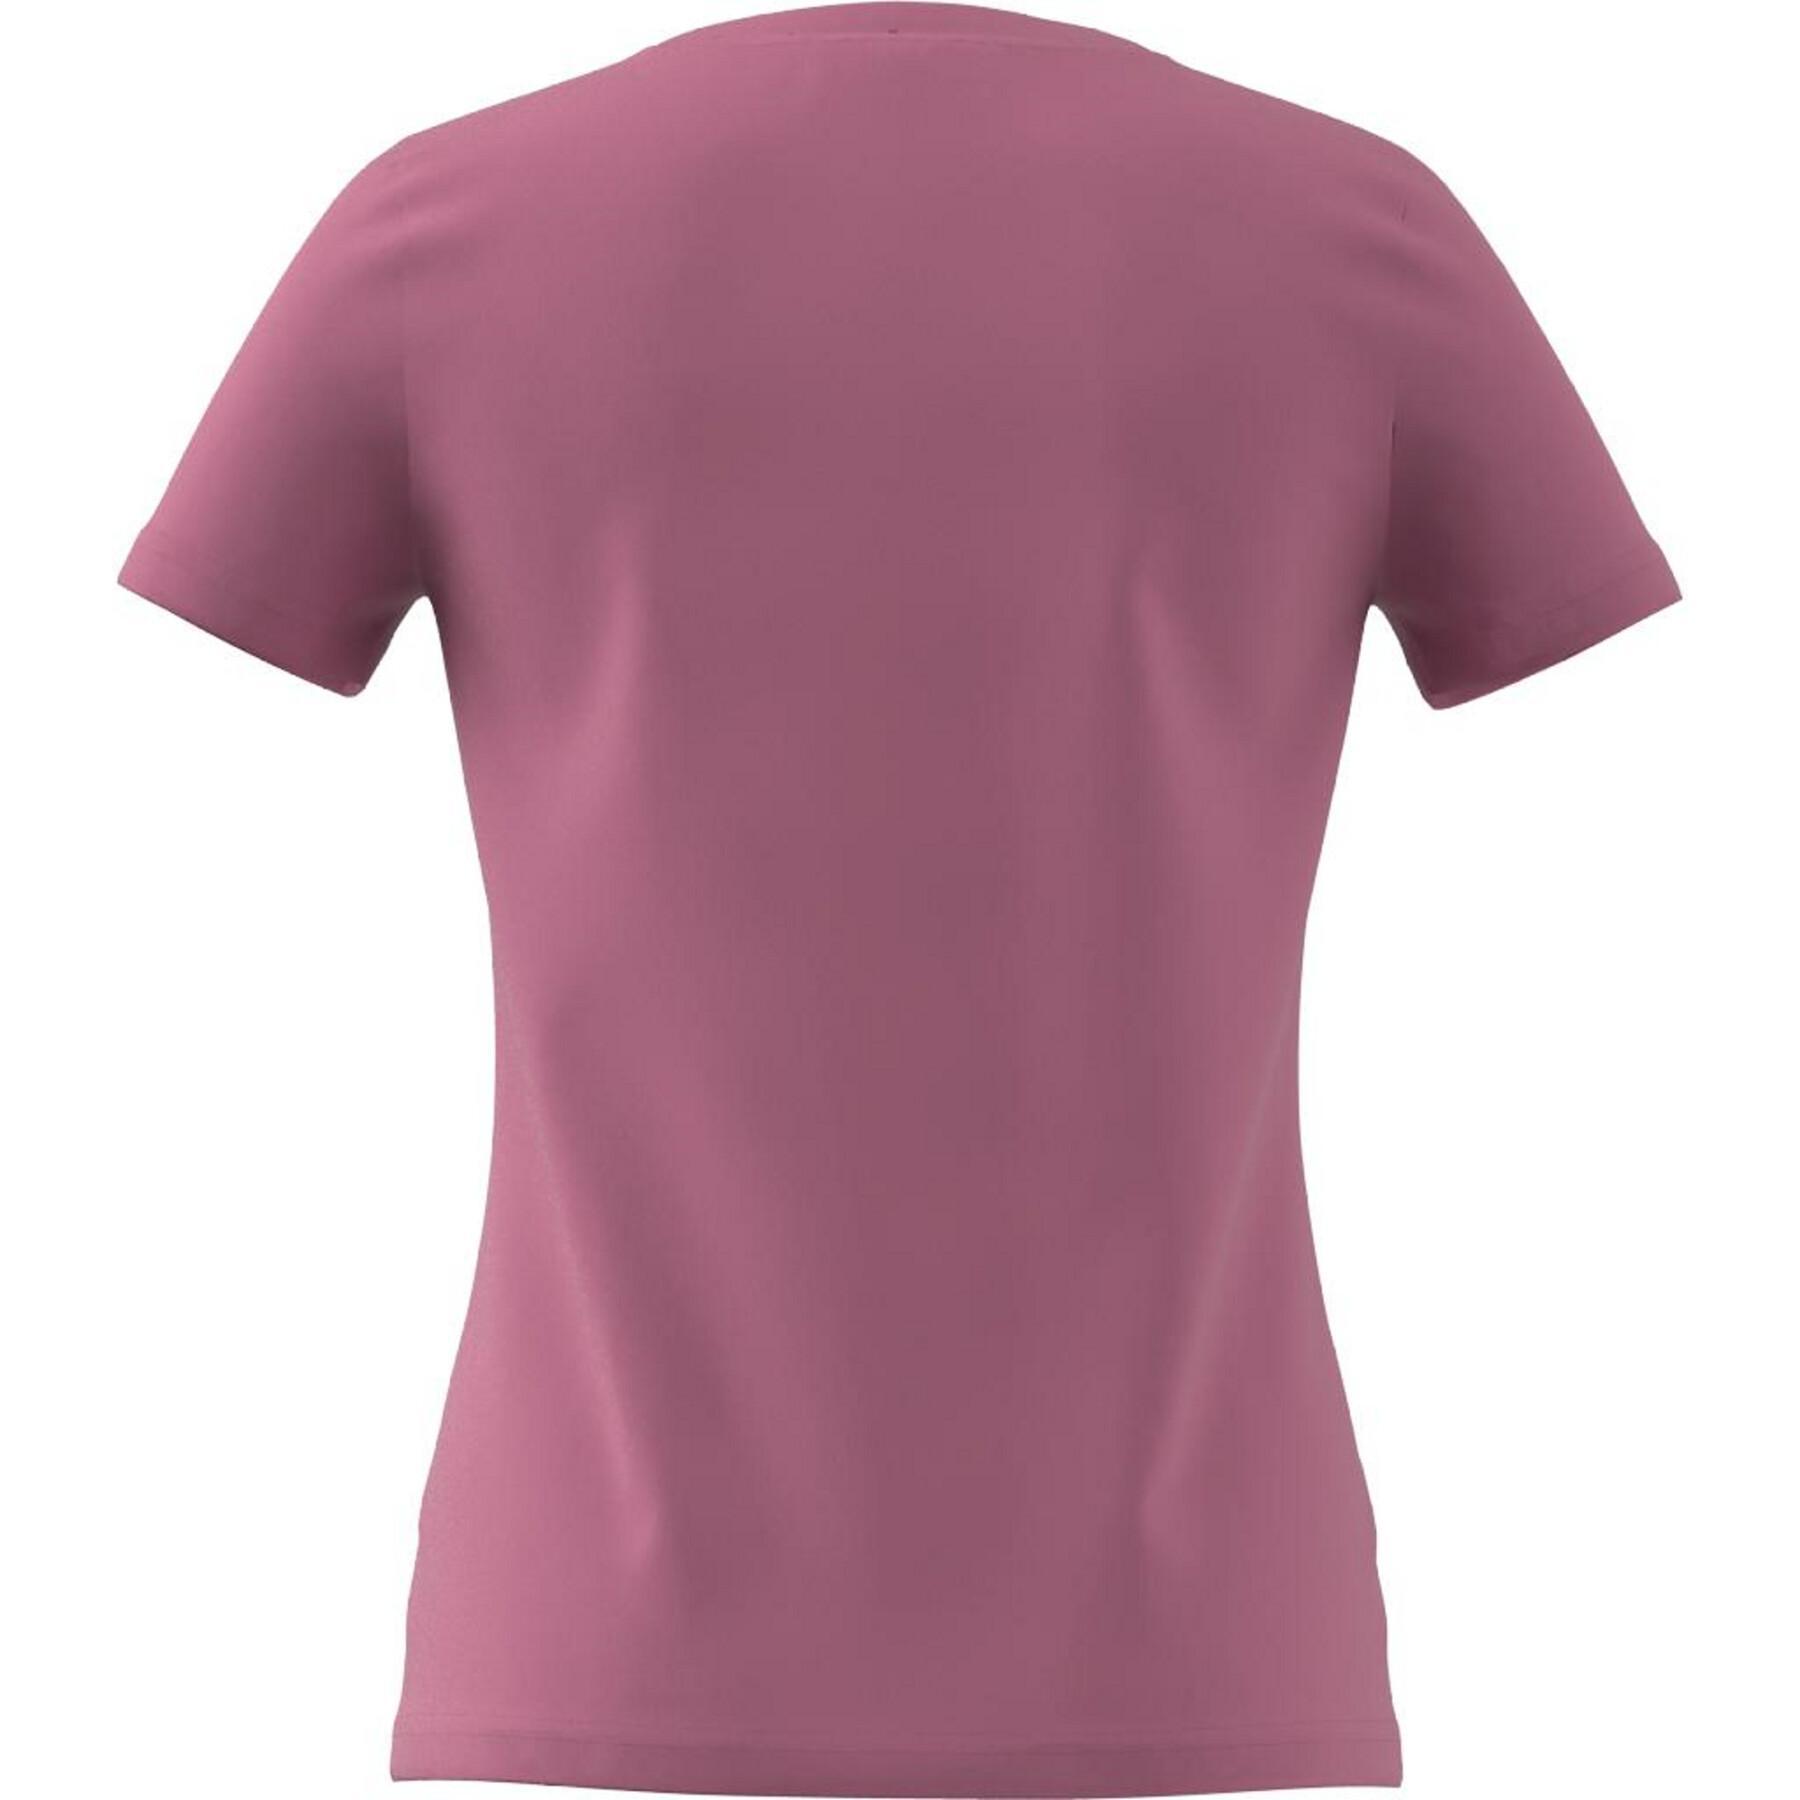 Mädchen-T-Shirt adidas Graphic